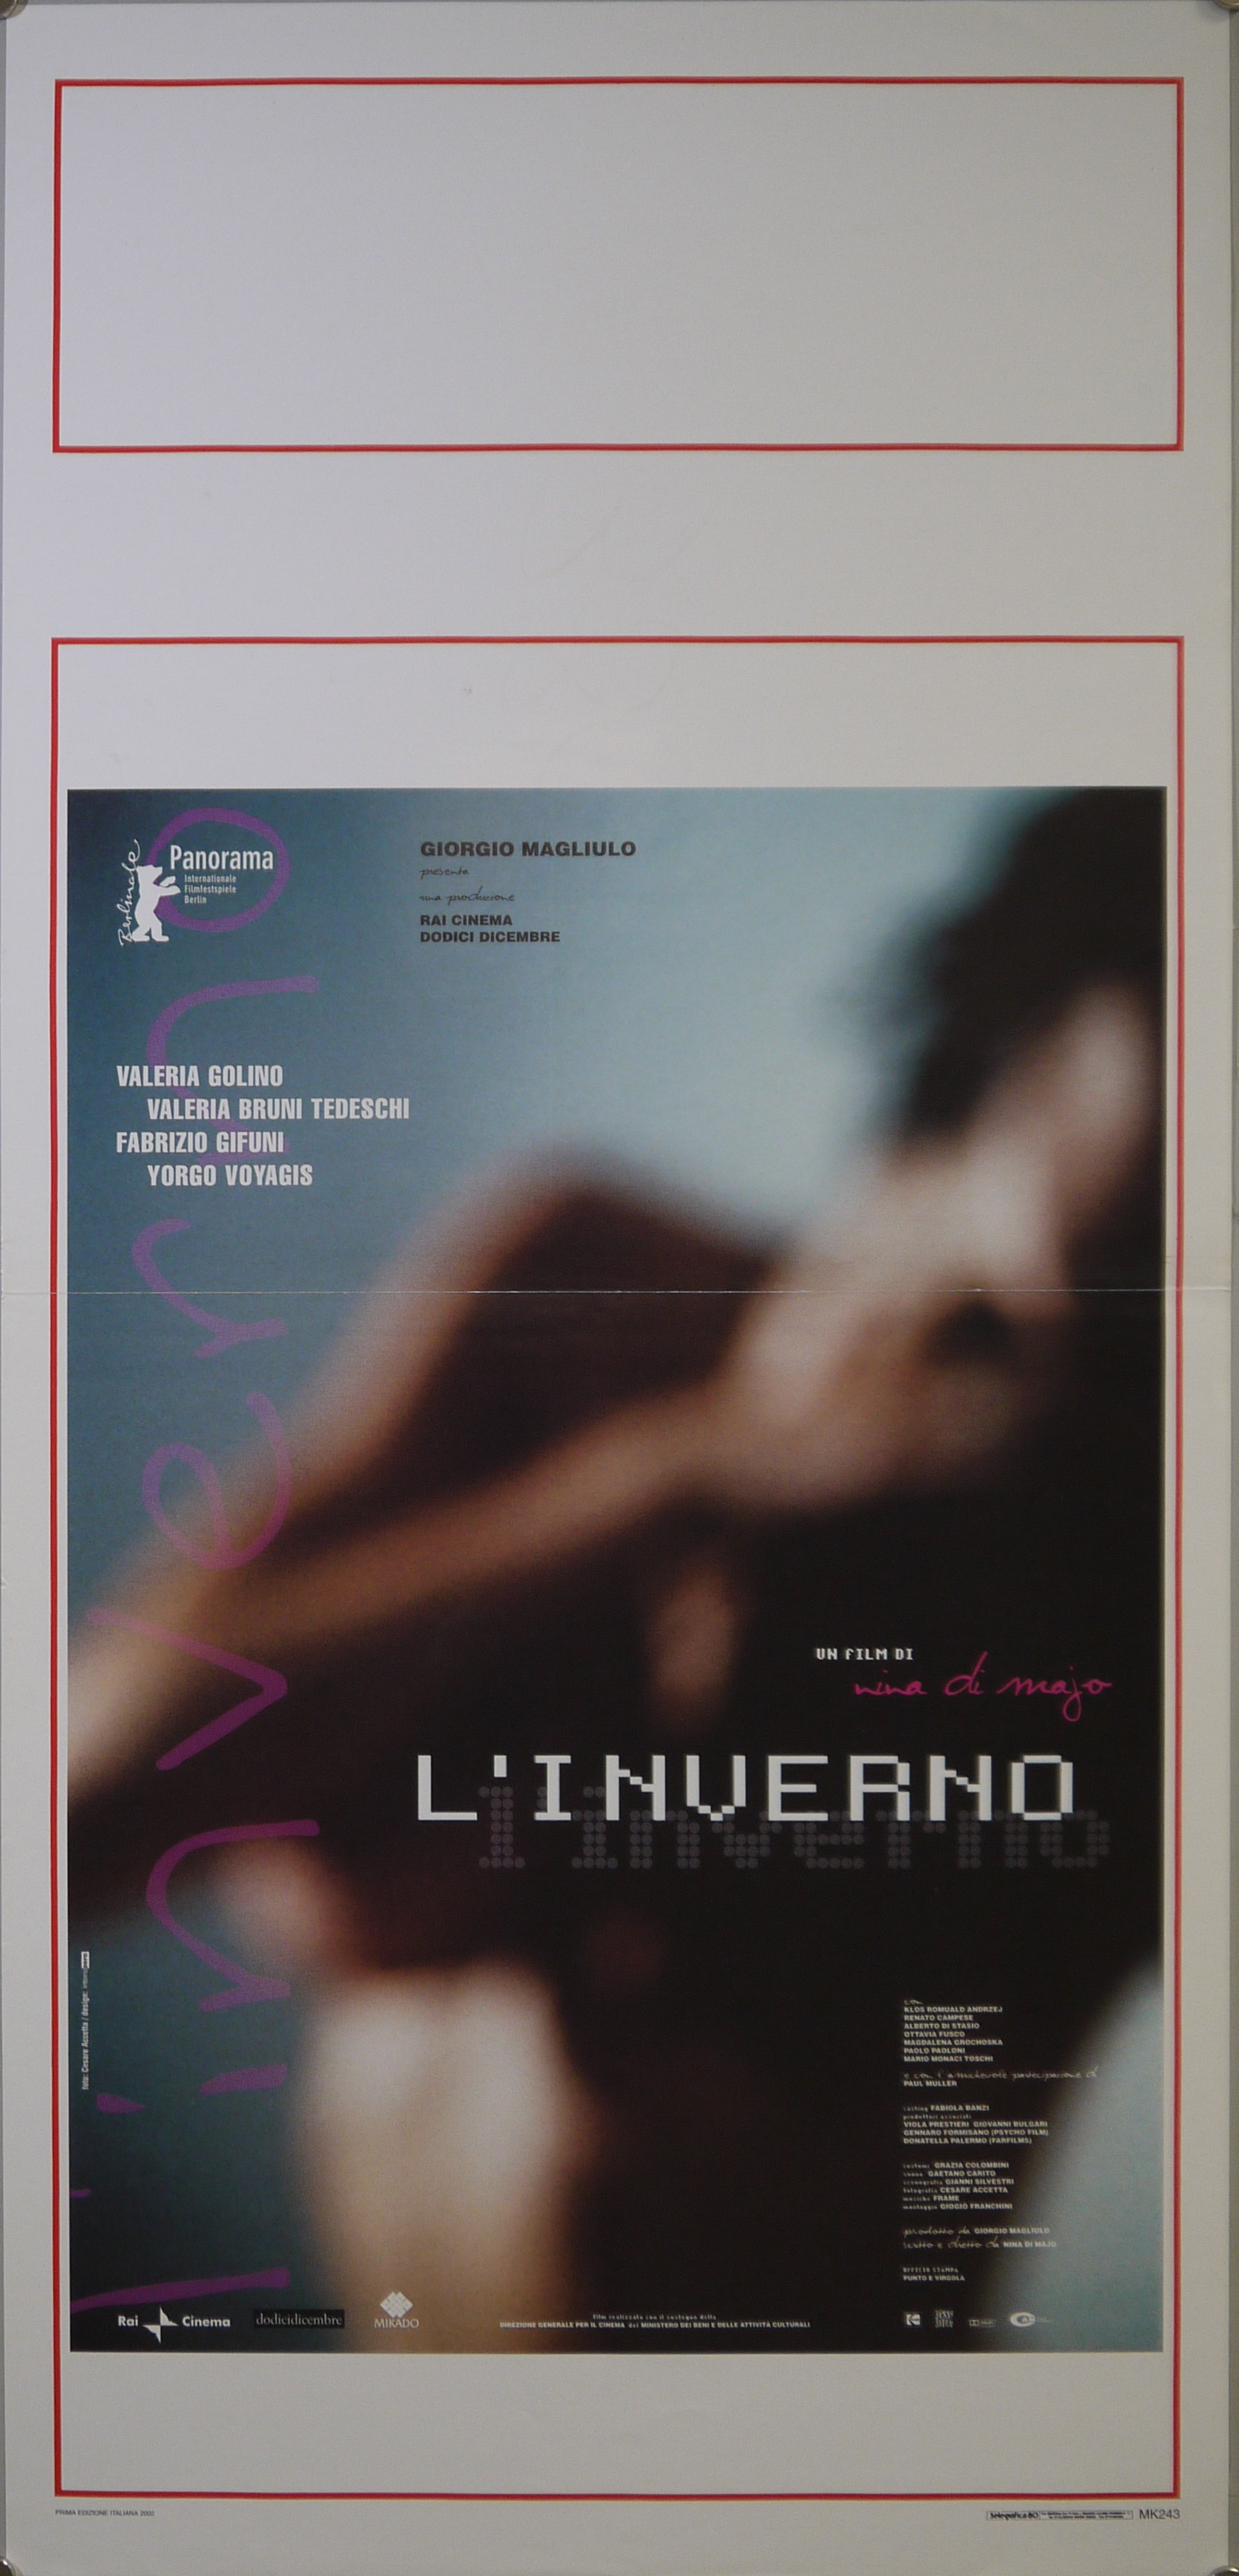 Fotografia sfocata di donna nuda con braccio destro sul seno (locandina) di Accetta Cesare, Internozero - ambito italiano (inizio XXI)